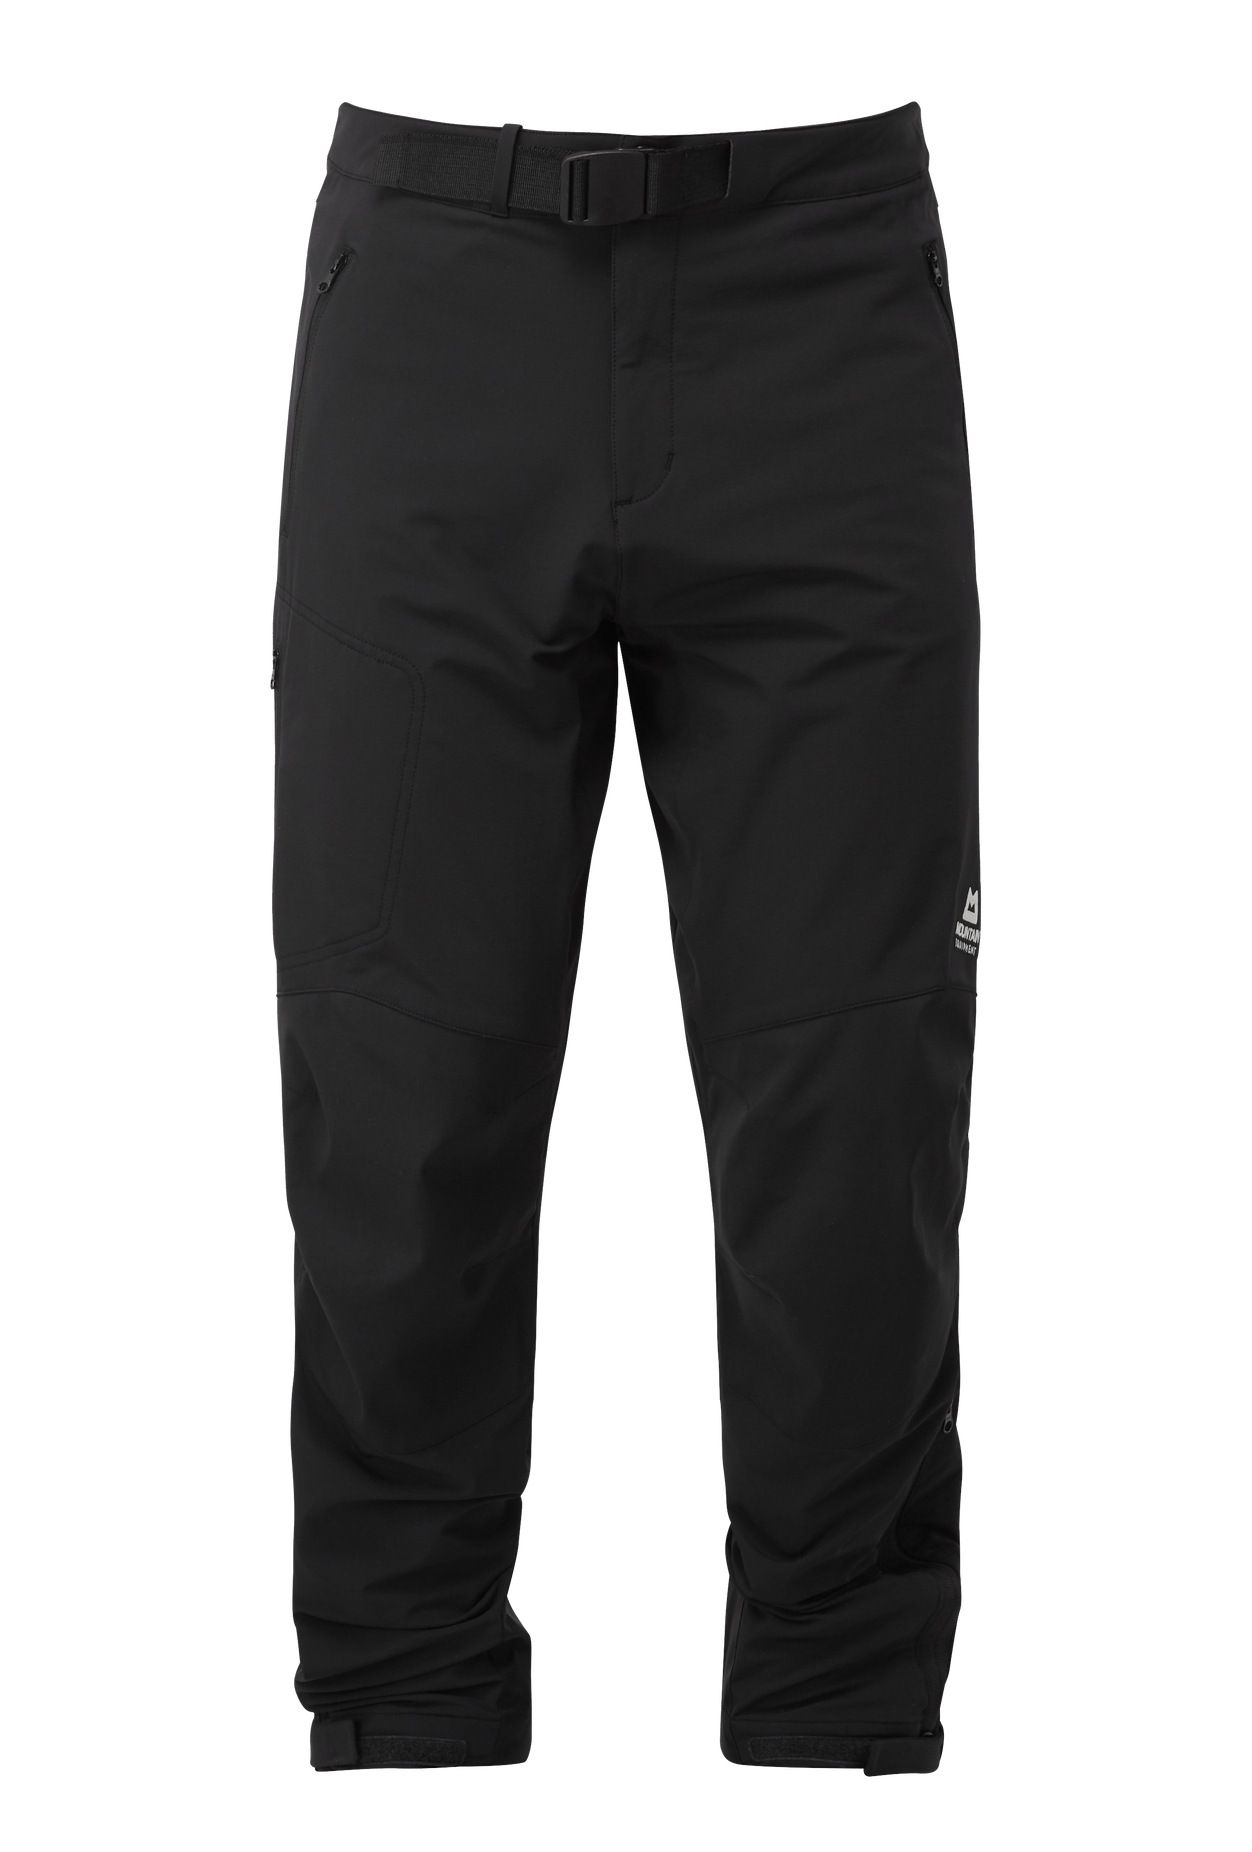 Mountain Equipment pánské softshellové kalhoty Mission Pant - zkrácené Barva: black, Velikost: 34/L